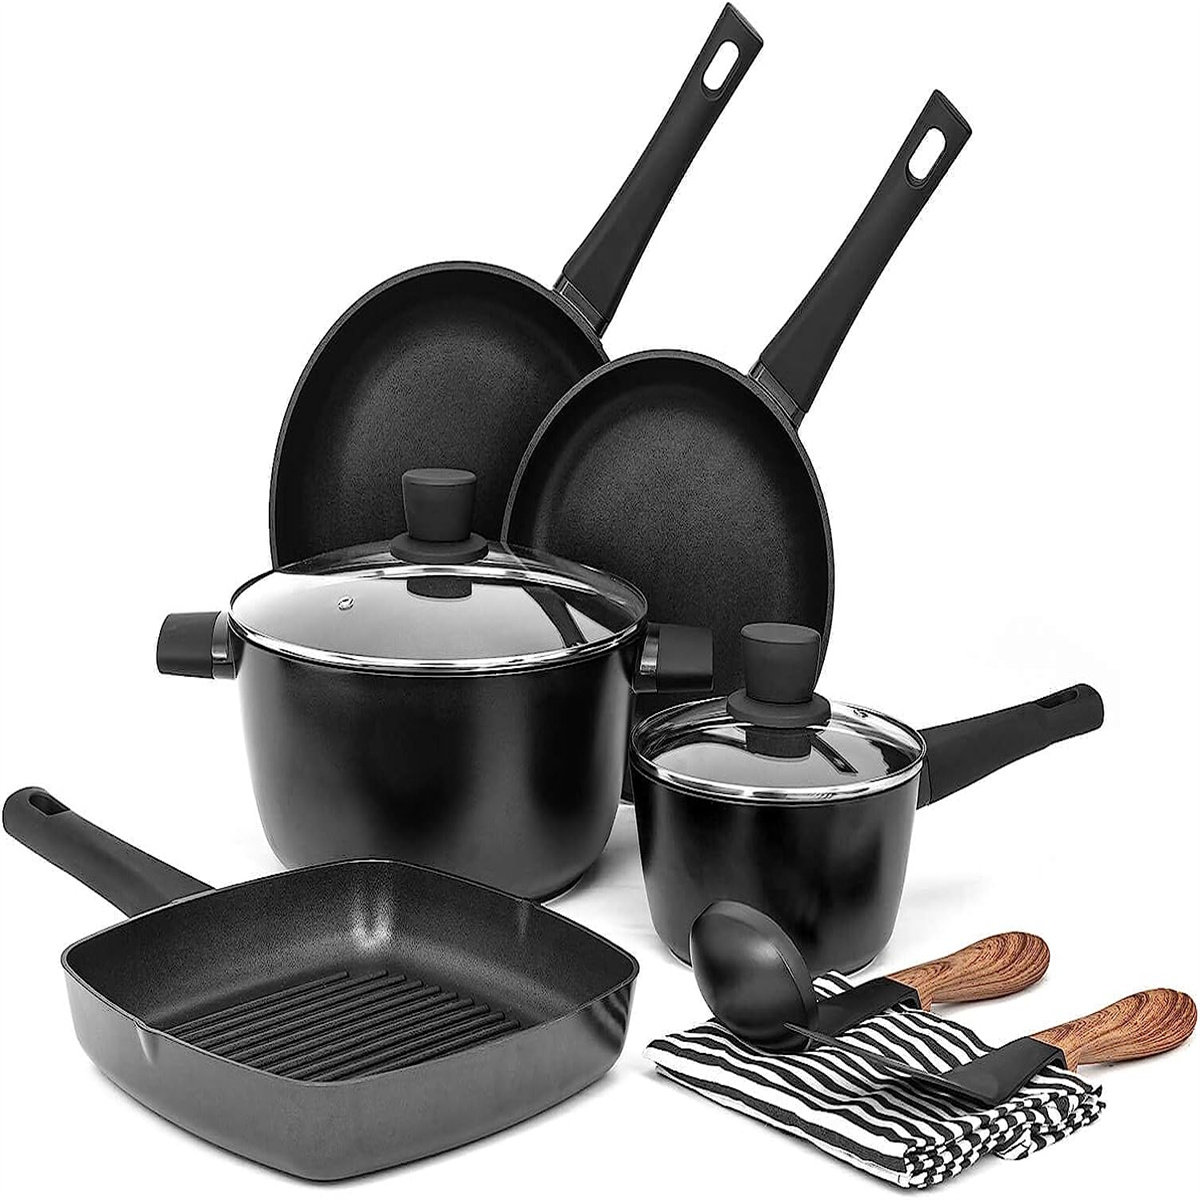 https://assets.wfcdn.com/im/70559854/compr-r85/2491/249146082/10-piece-non-stick-aluminum-cookware-set.jpg